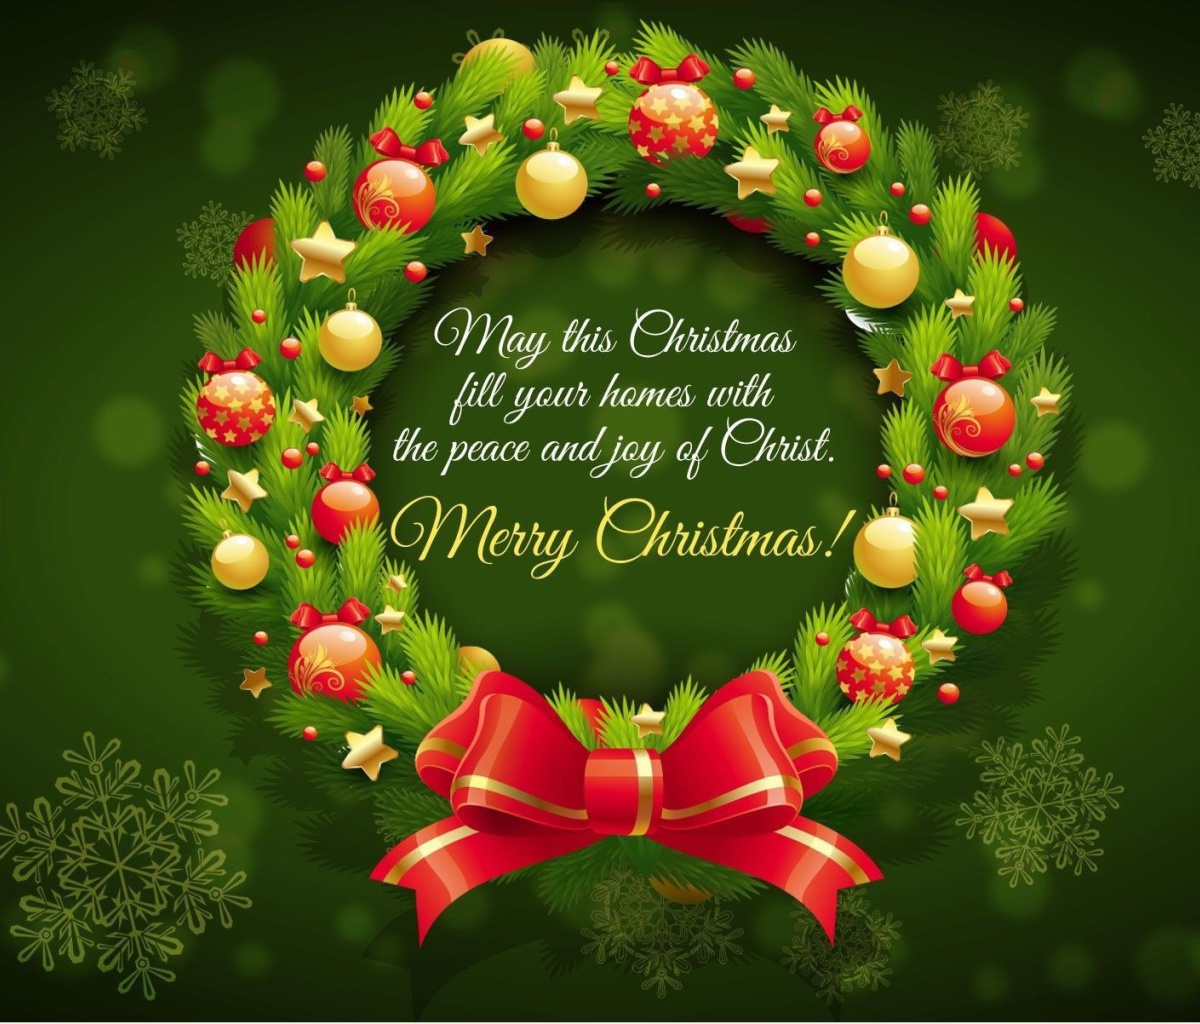 Обои Merry Christmas 25 December SMS Wish 1200x1024